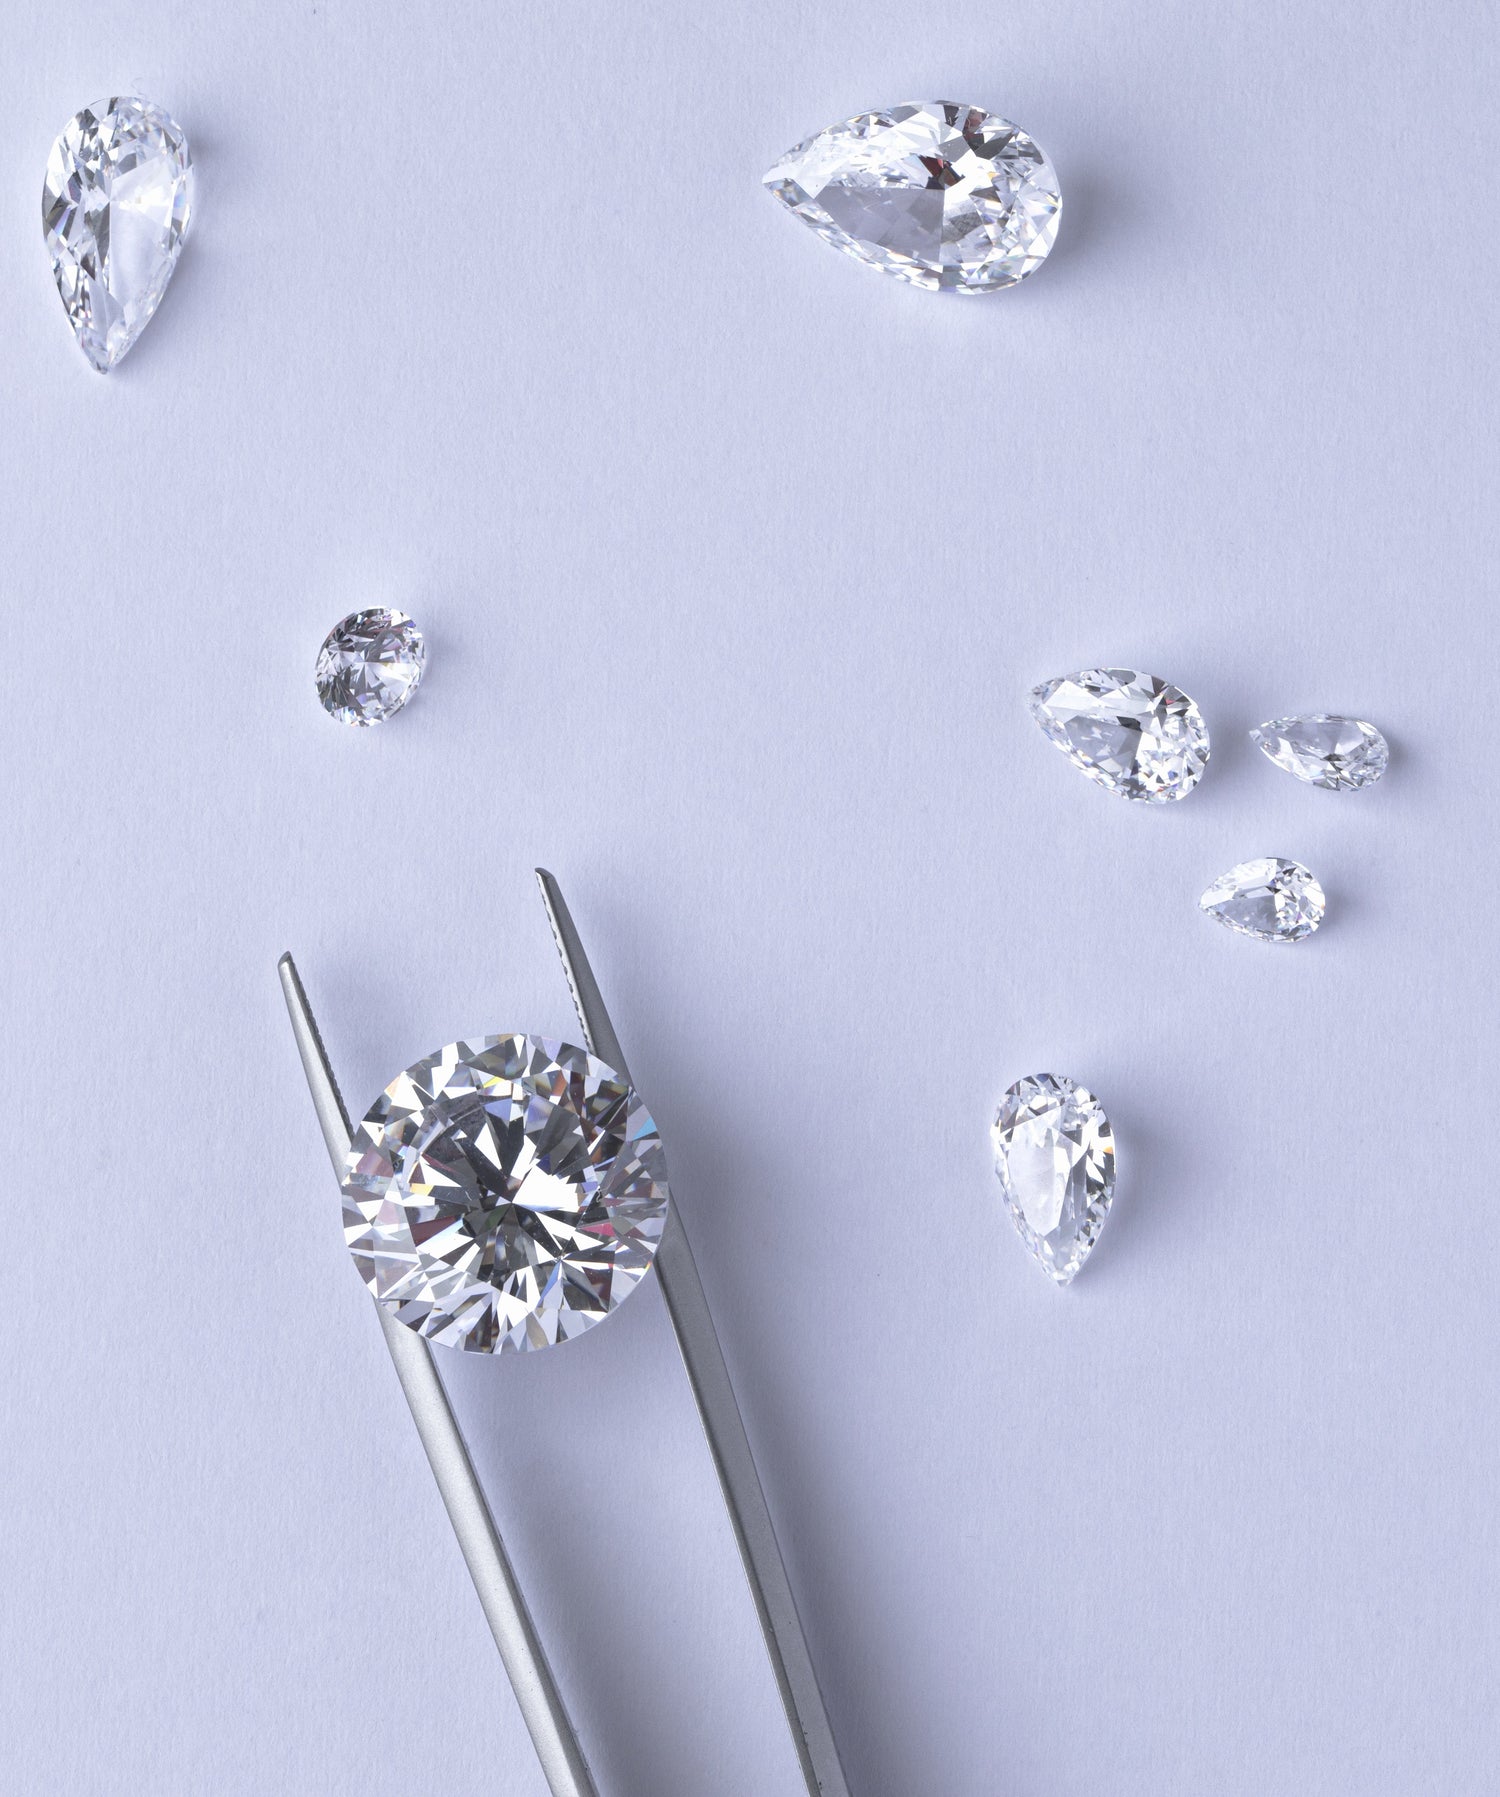 how to choose a diamond, diamond buying guide, diamond carats, size of diamonds, 1 carat diamond, lab grown diamonds, manmade diamonds